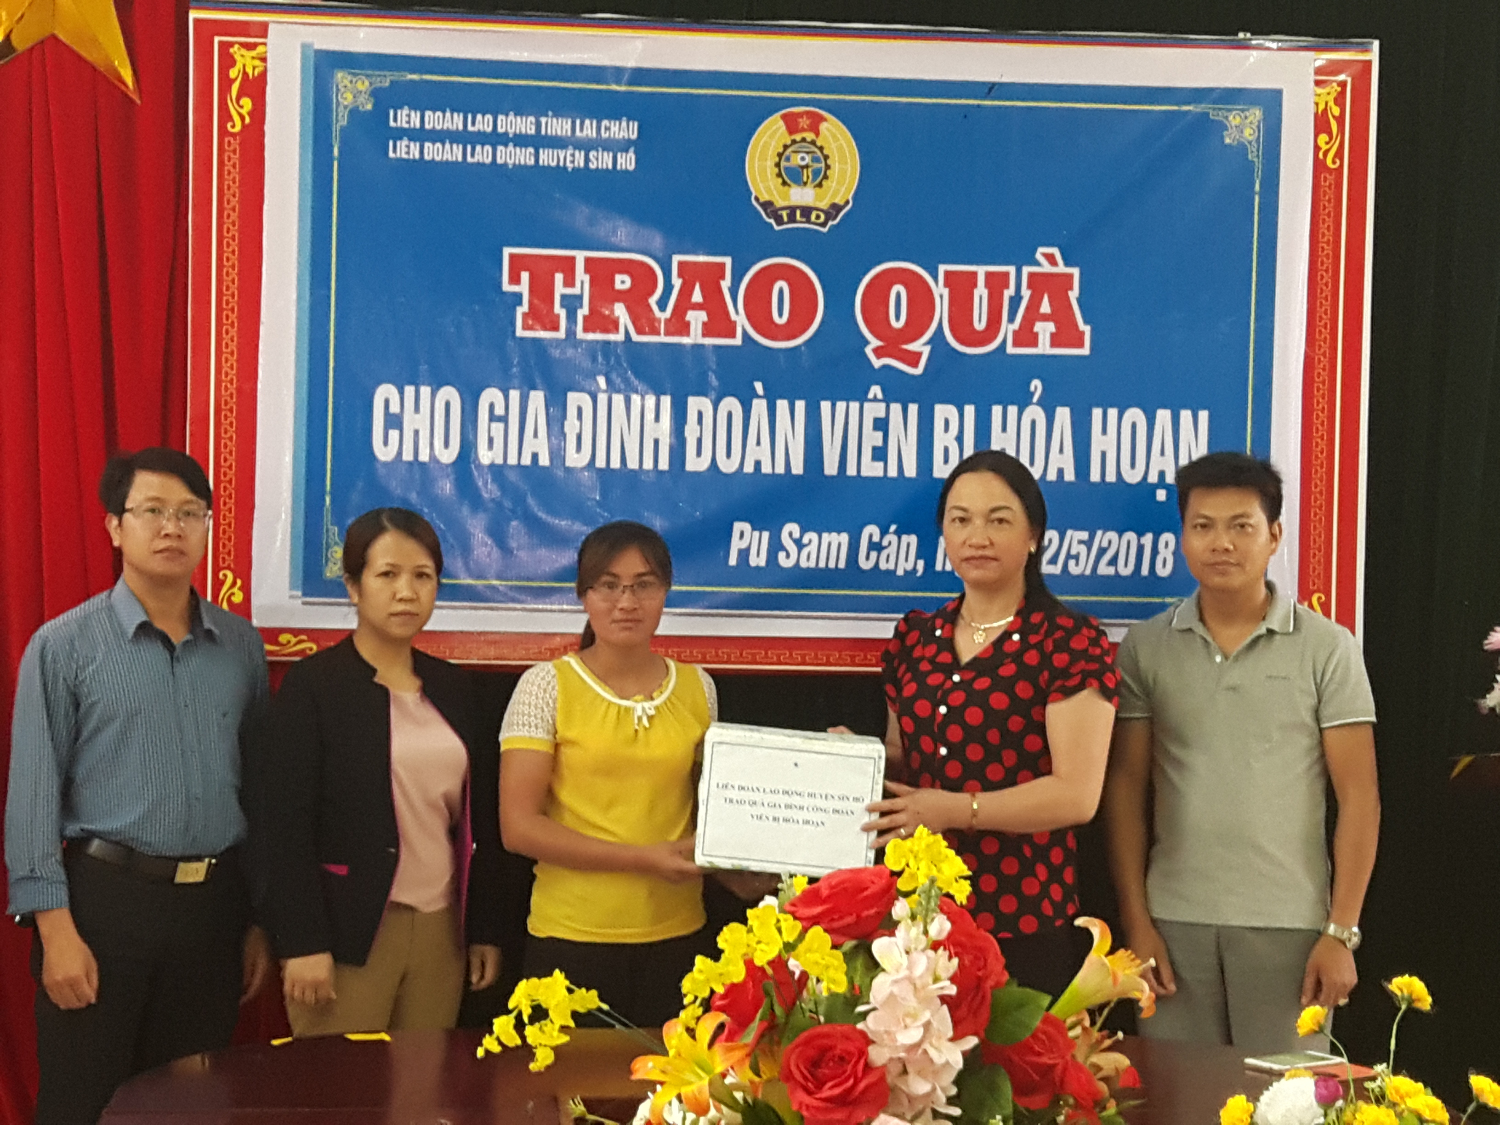 Thường trực LĐLĐ huyện Sìn Hồ thăm và tặng quà hỗ trợ cho gia đình đoàn viên bị thiên tai hỏa hoạn